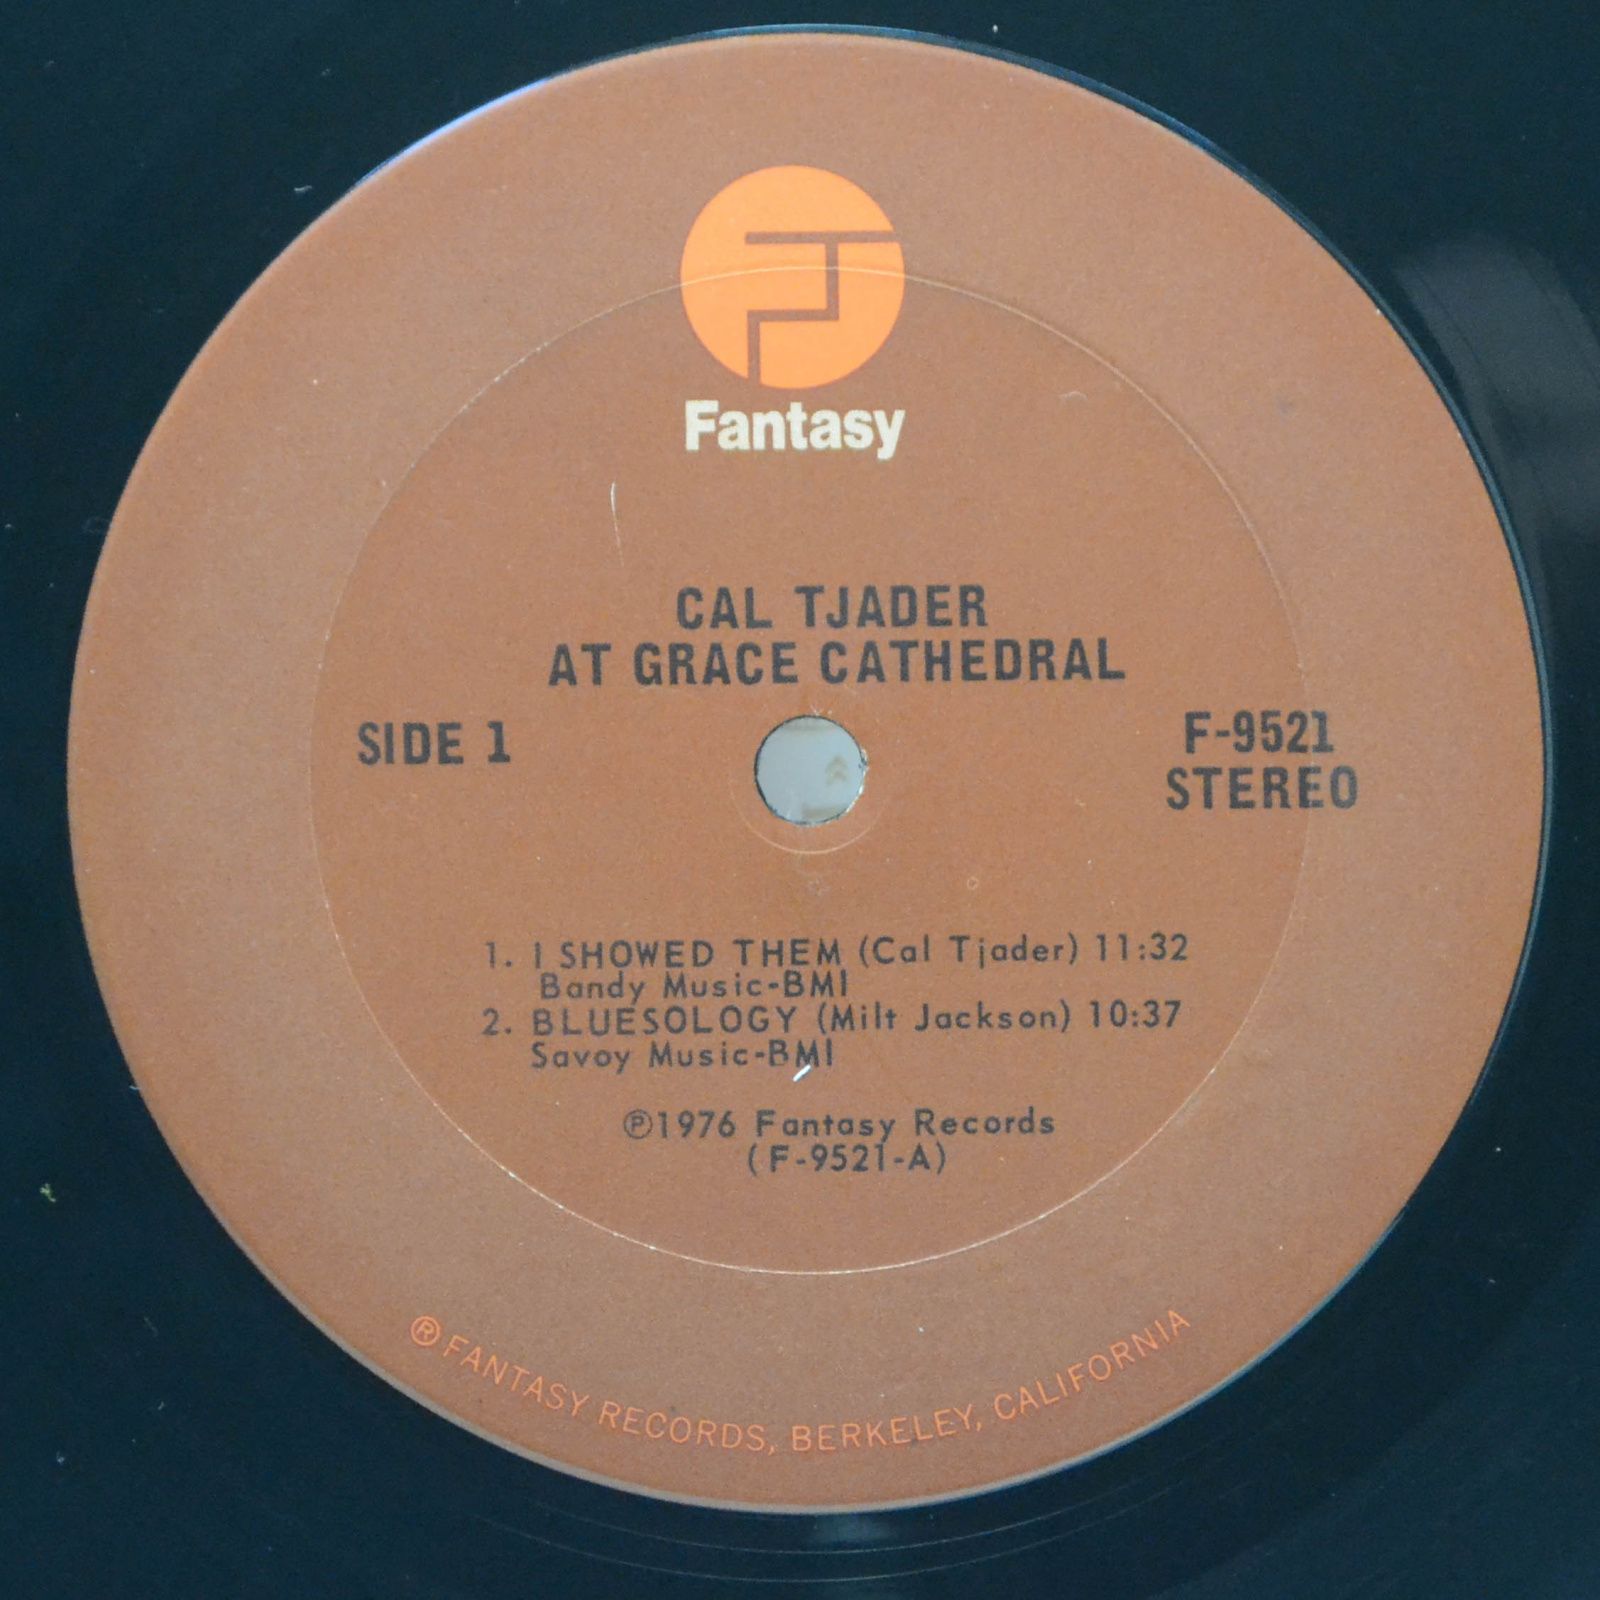 Cal Tjader — At Grace Cathedral, 1977